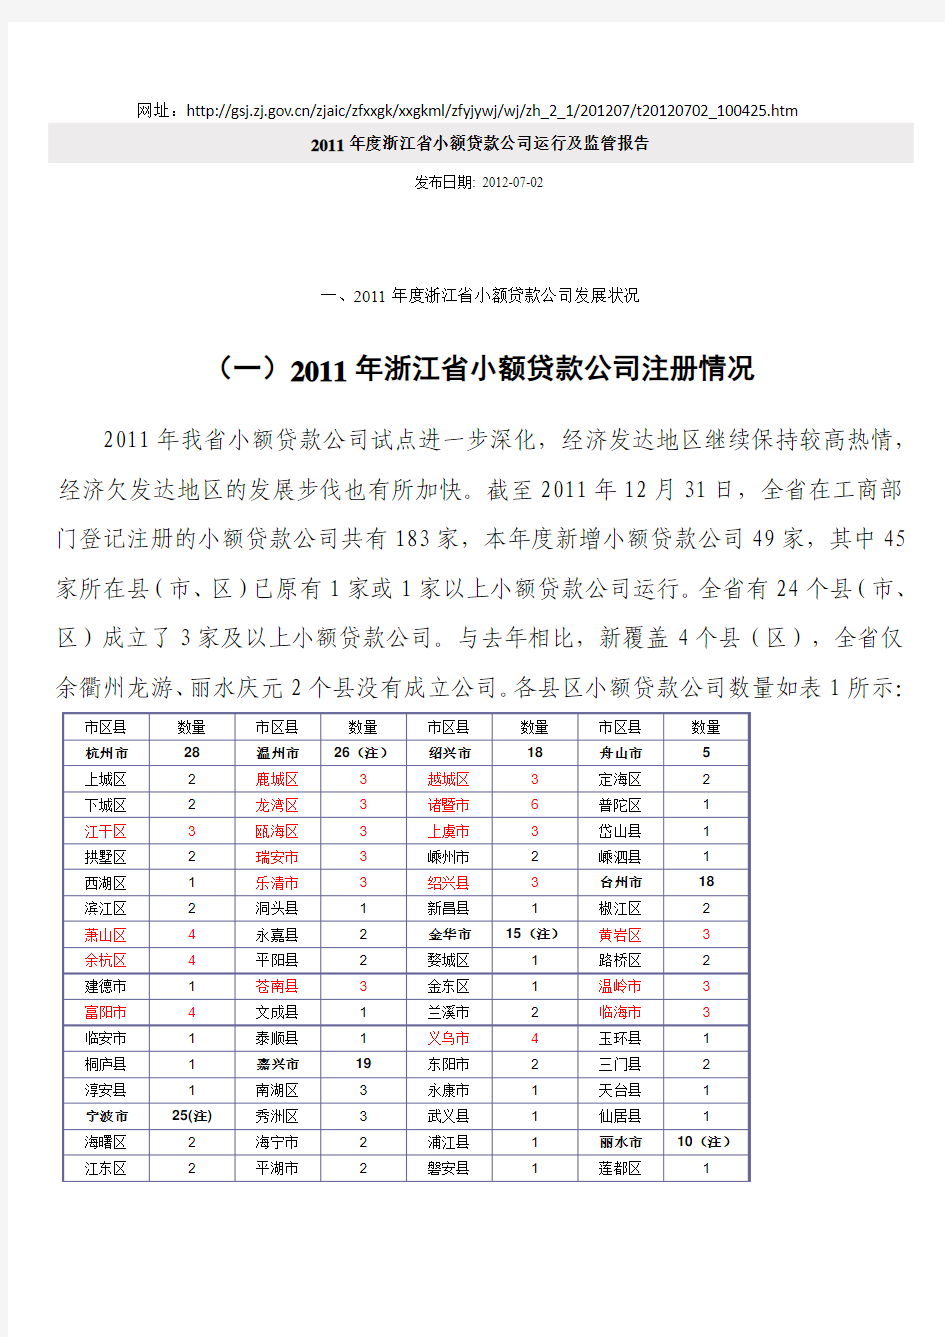 2011年度浙江省小额贷款公司运行及监管报告